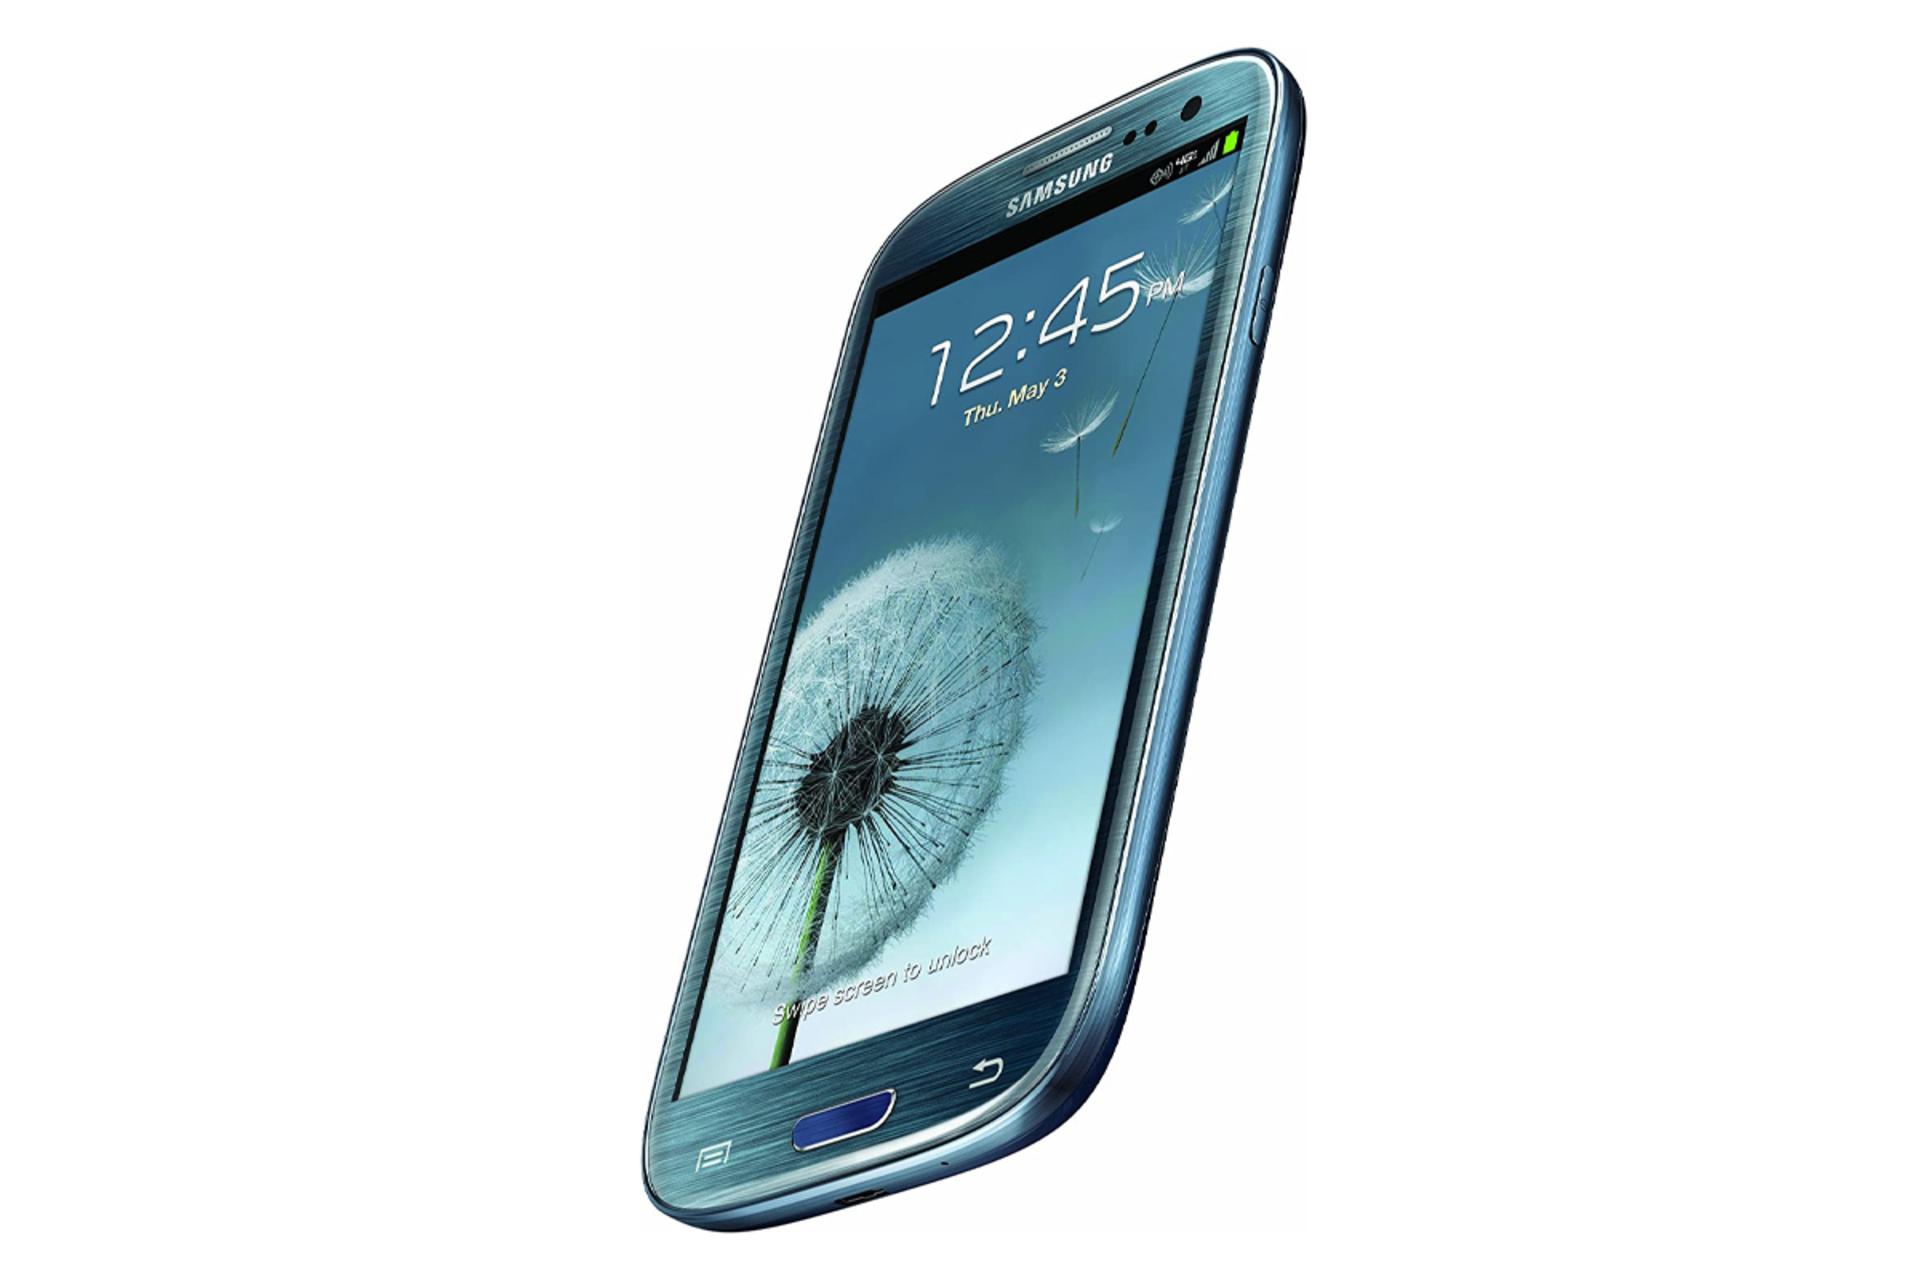 نمایشگر گلگسی اس 3 I9305 سامسونگ Samsung I9305 Galaxy S III